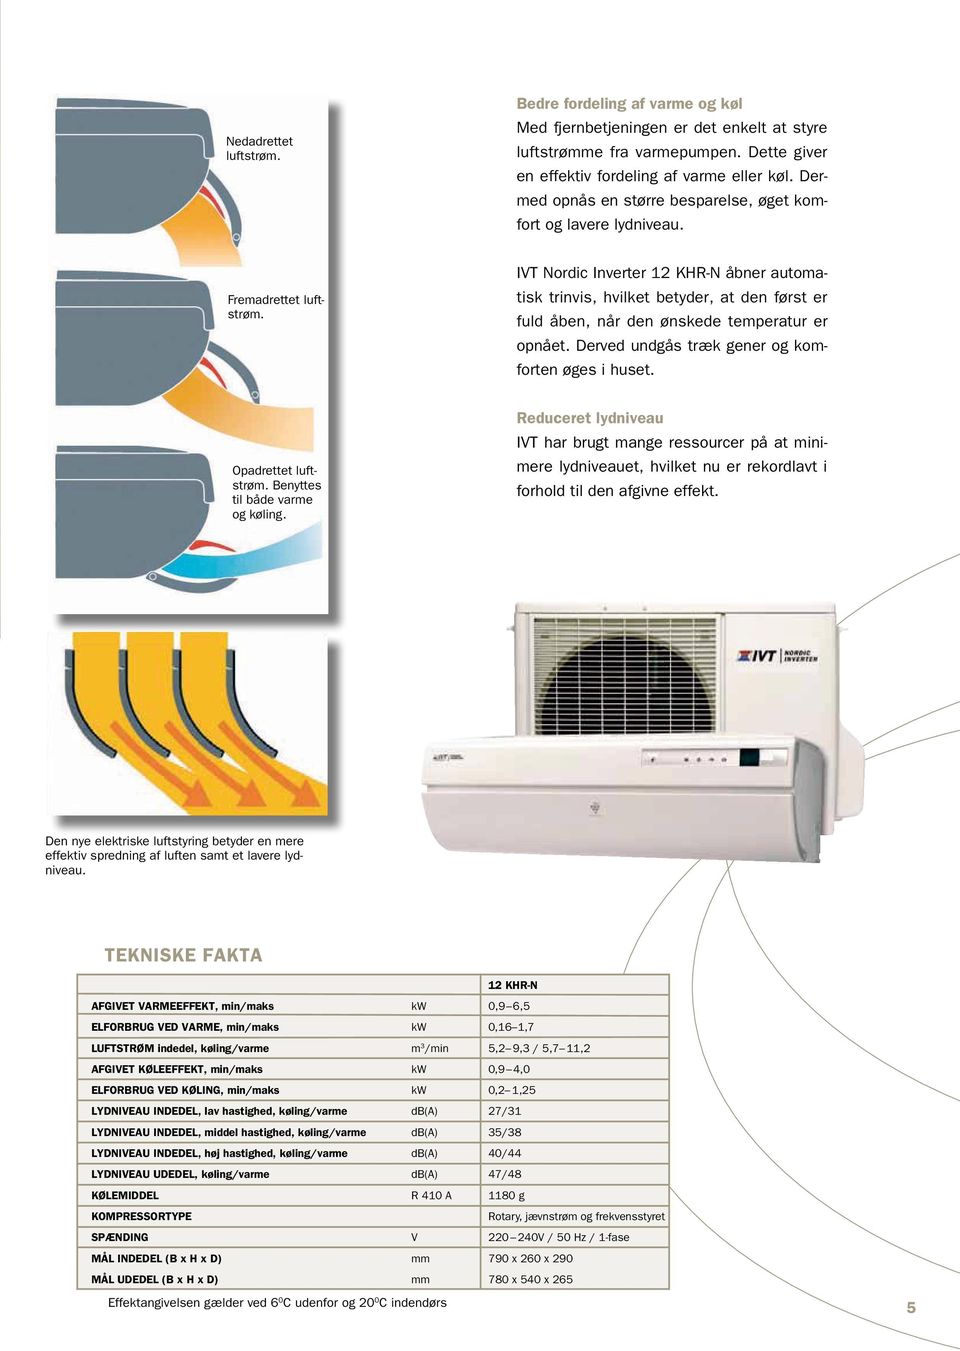 Luft/Luft varmepumper. IVT Nordic Inverter 09 FR-N, 12 FR-N & 12 KHR-N V A  R M E P U M P E R. 2. udgave - PDF Gratis download